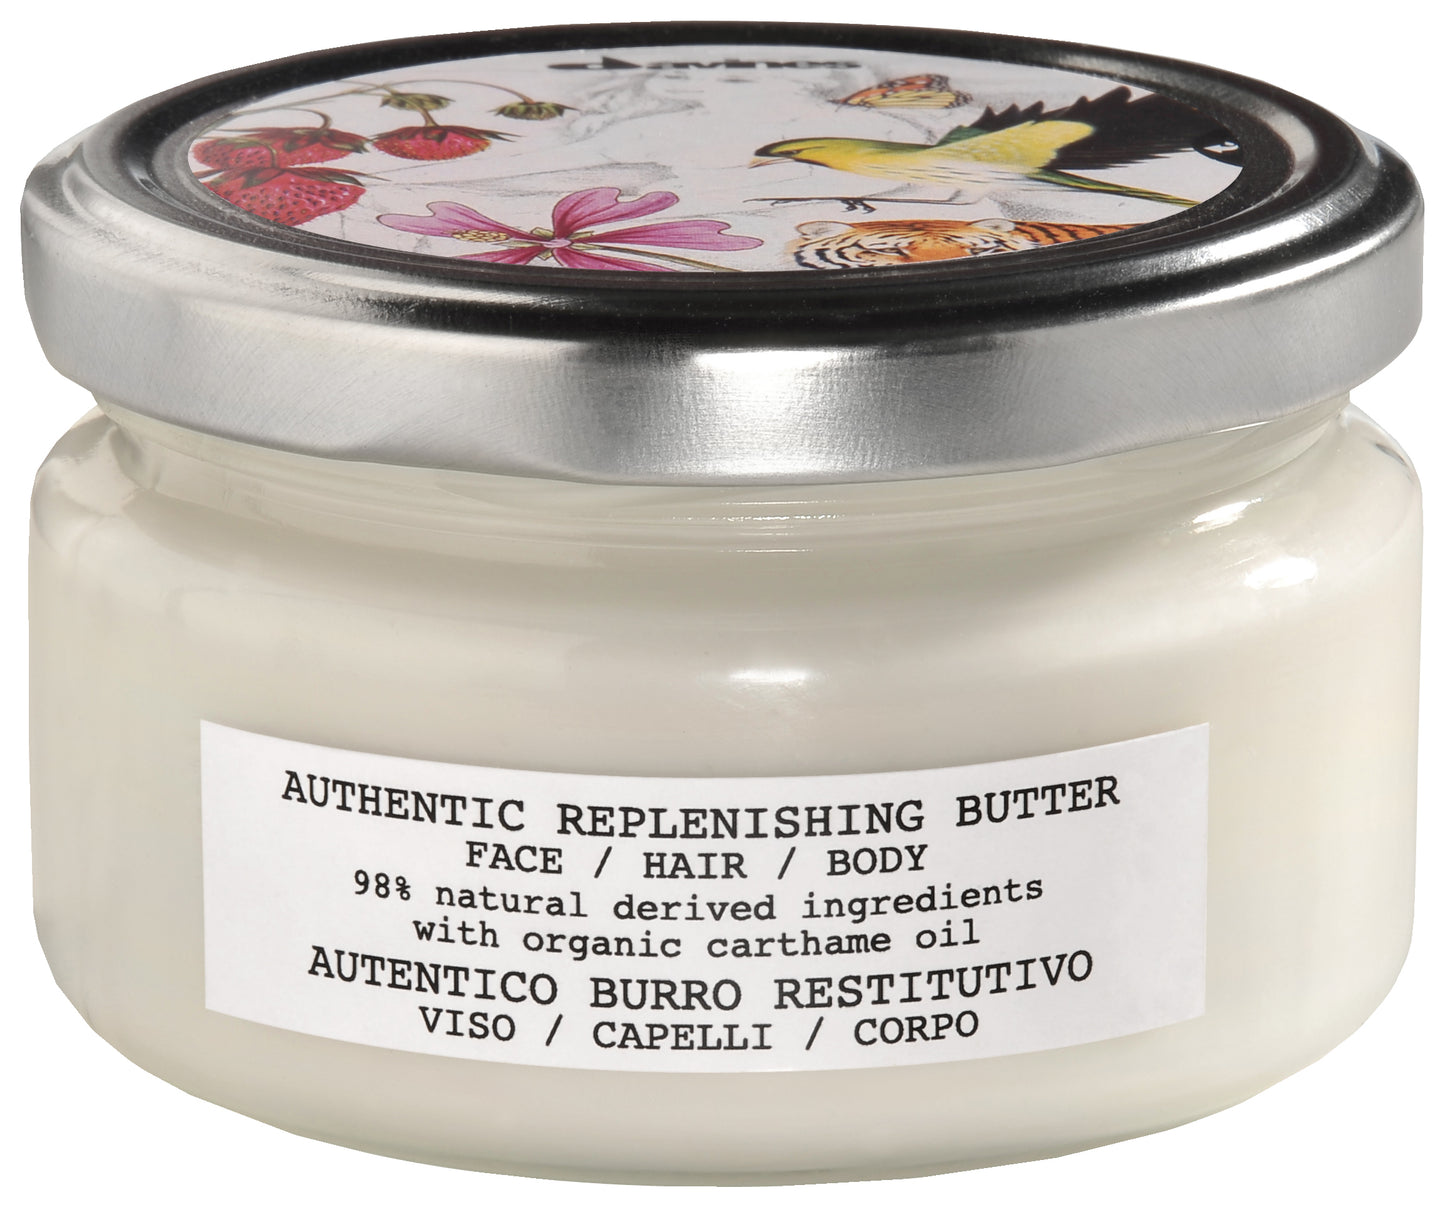 Replenishing Butter Face/Hair/Body